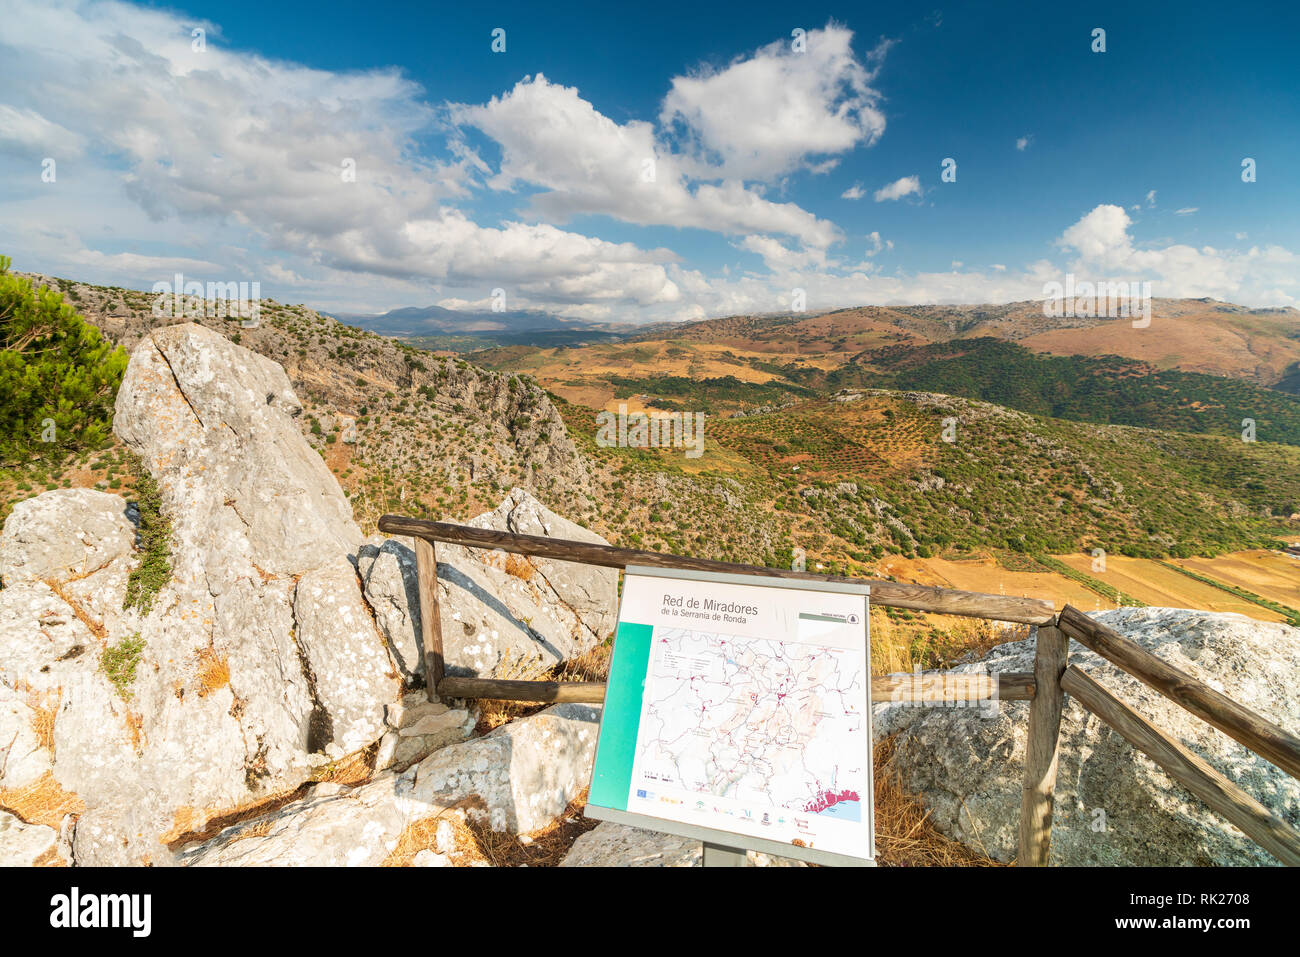 Mirador et randonnées pancarte dans le Parc National de Sierra de Grazalema, entouré de montagnes Serrania de Ronda, province de Malaga, Andalousie, Espagne Banque D'Images